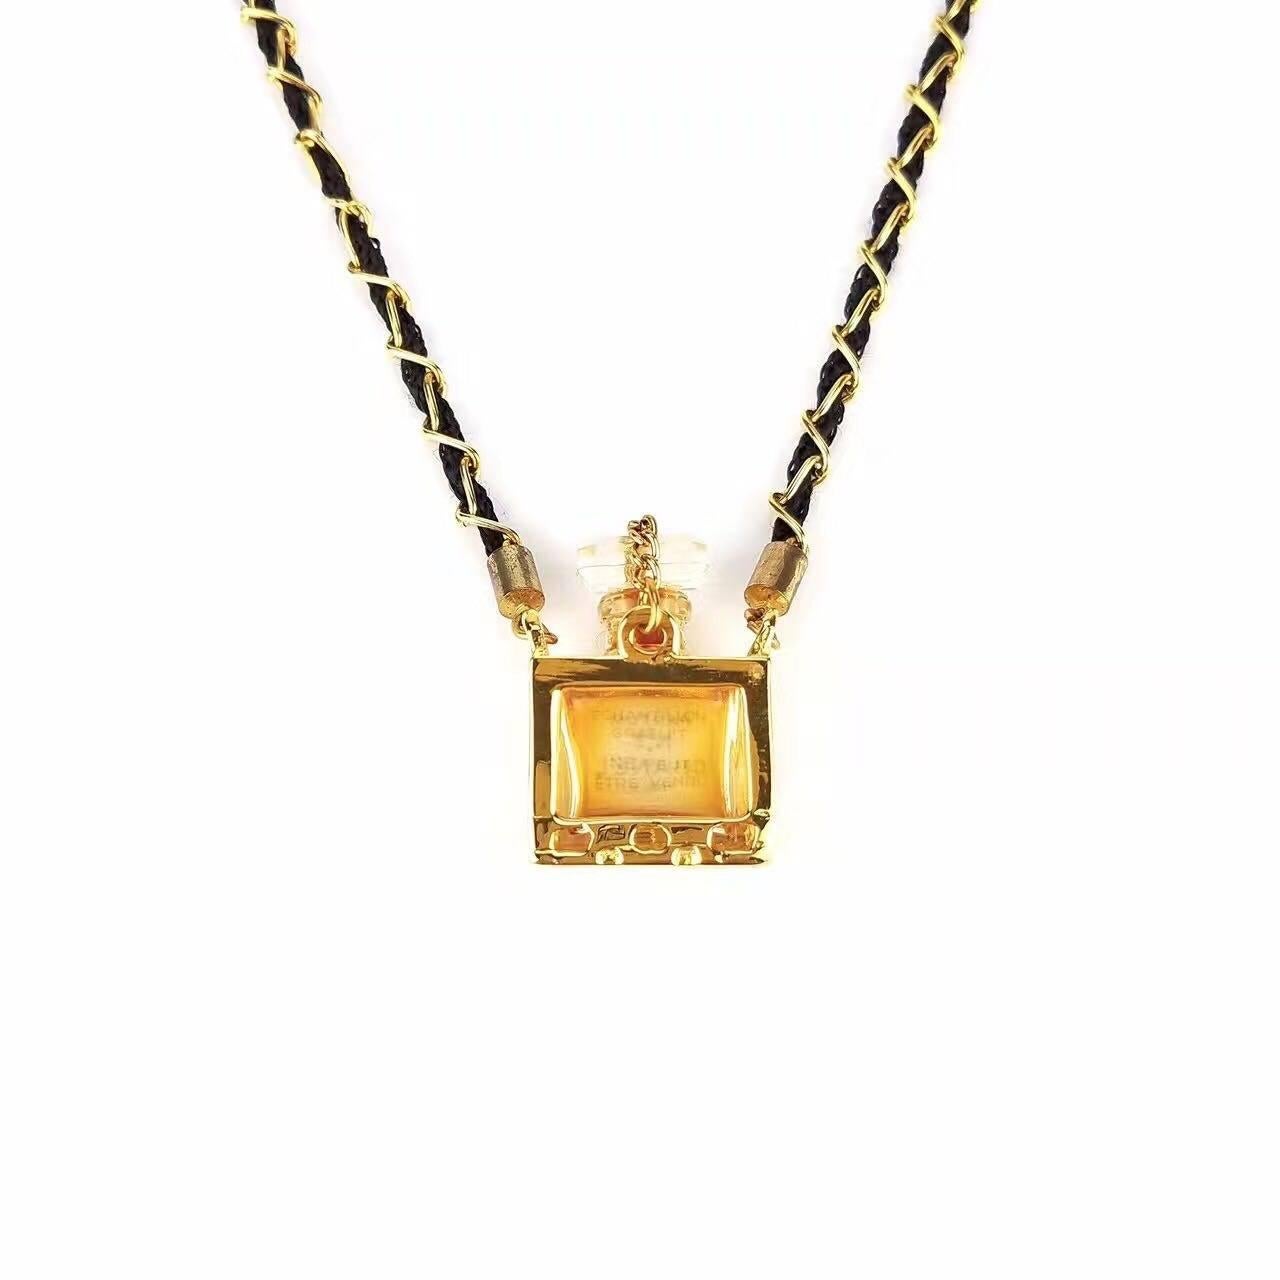  Chanel No5 Perfume Bottle Pendant Gold Chain Necklace Pour femmes 